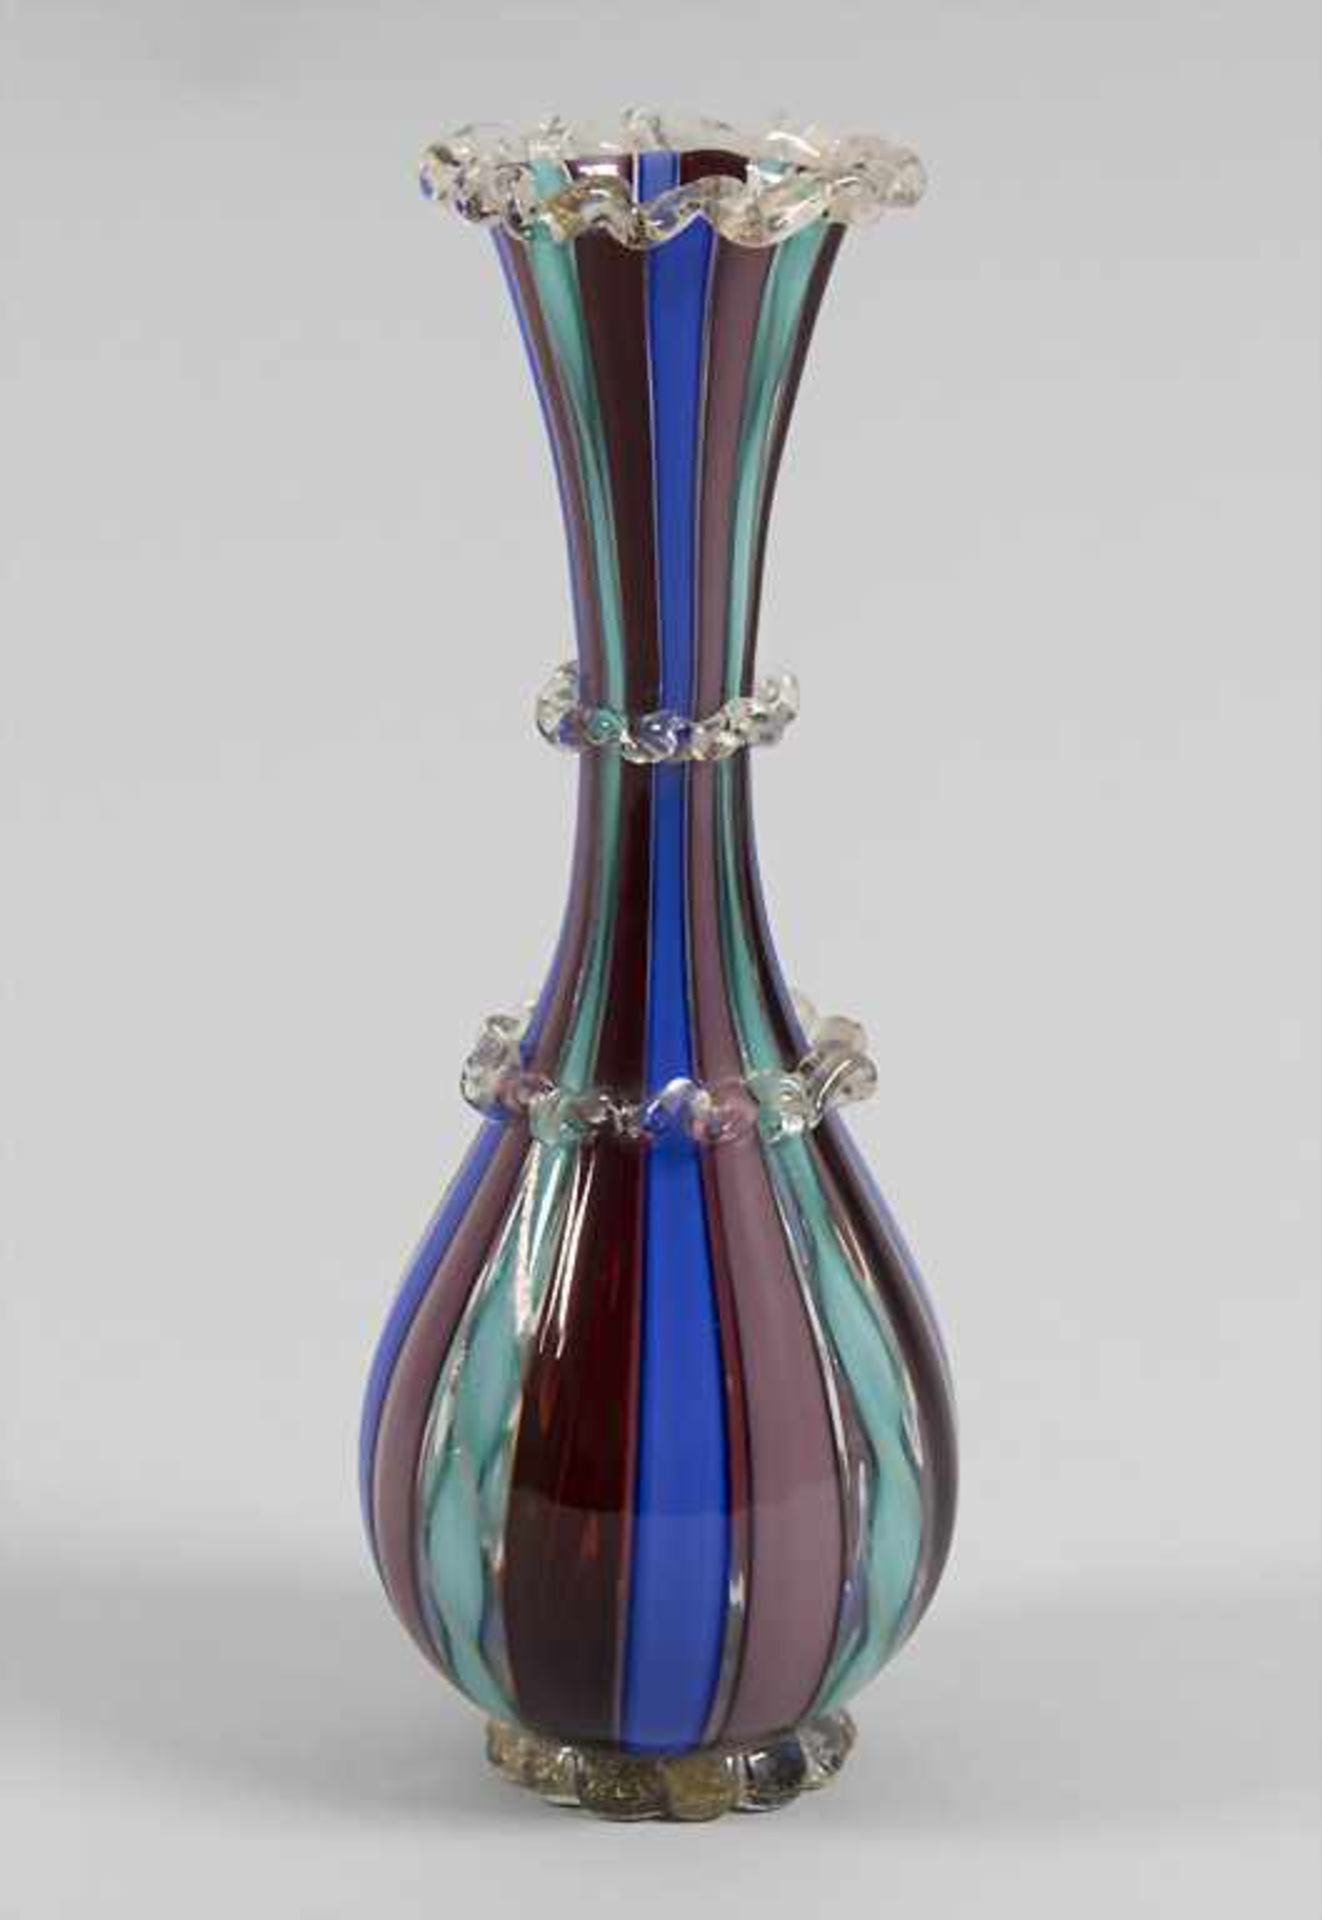 Glasziervase / A decorative vase, Murano, 40/50er Jahre